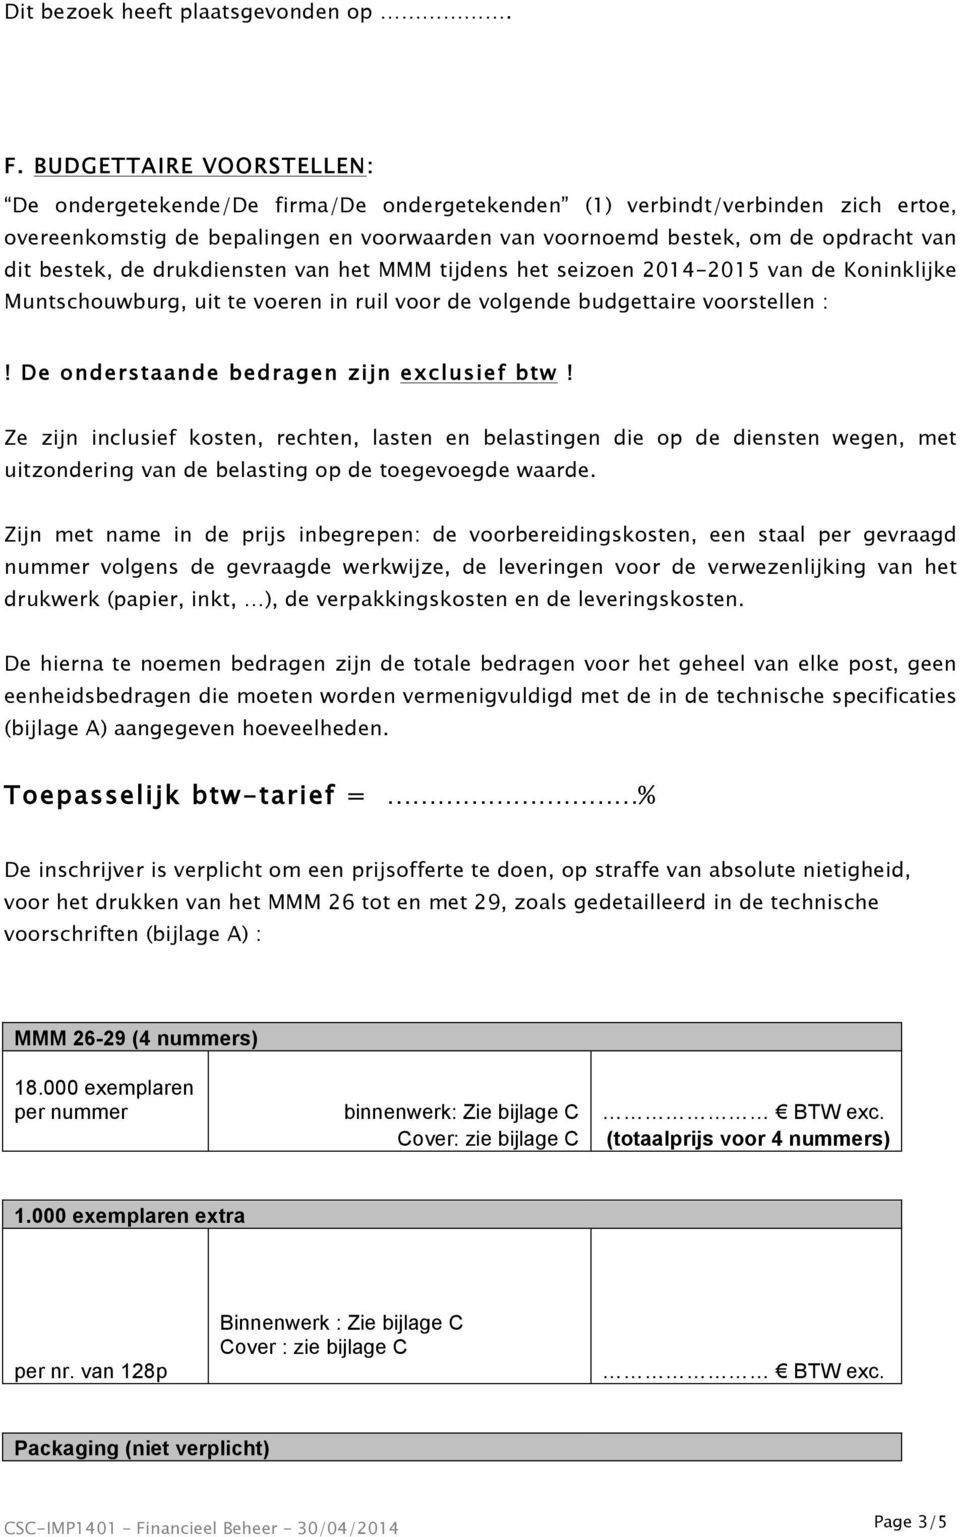 bestek, de drukdiensten van het MMM tijdens het seizoen 2014-2015 van de Koninklijke Muntschouwburg, uit te voeren in ruil voor de volgende budgettaire voorstellen :!